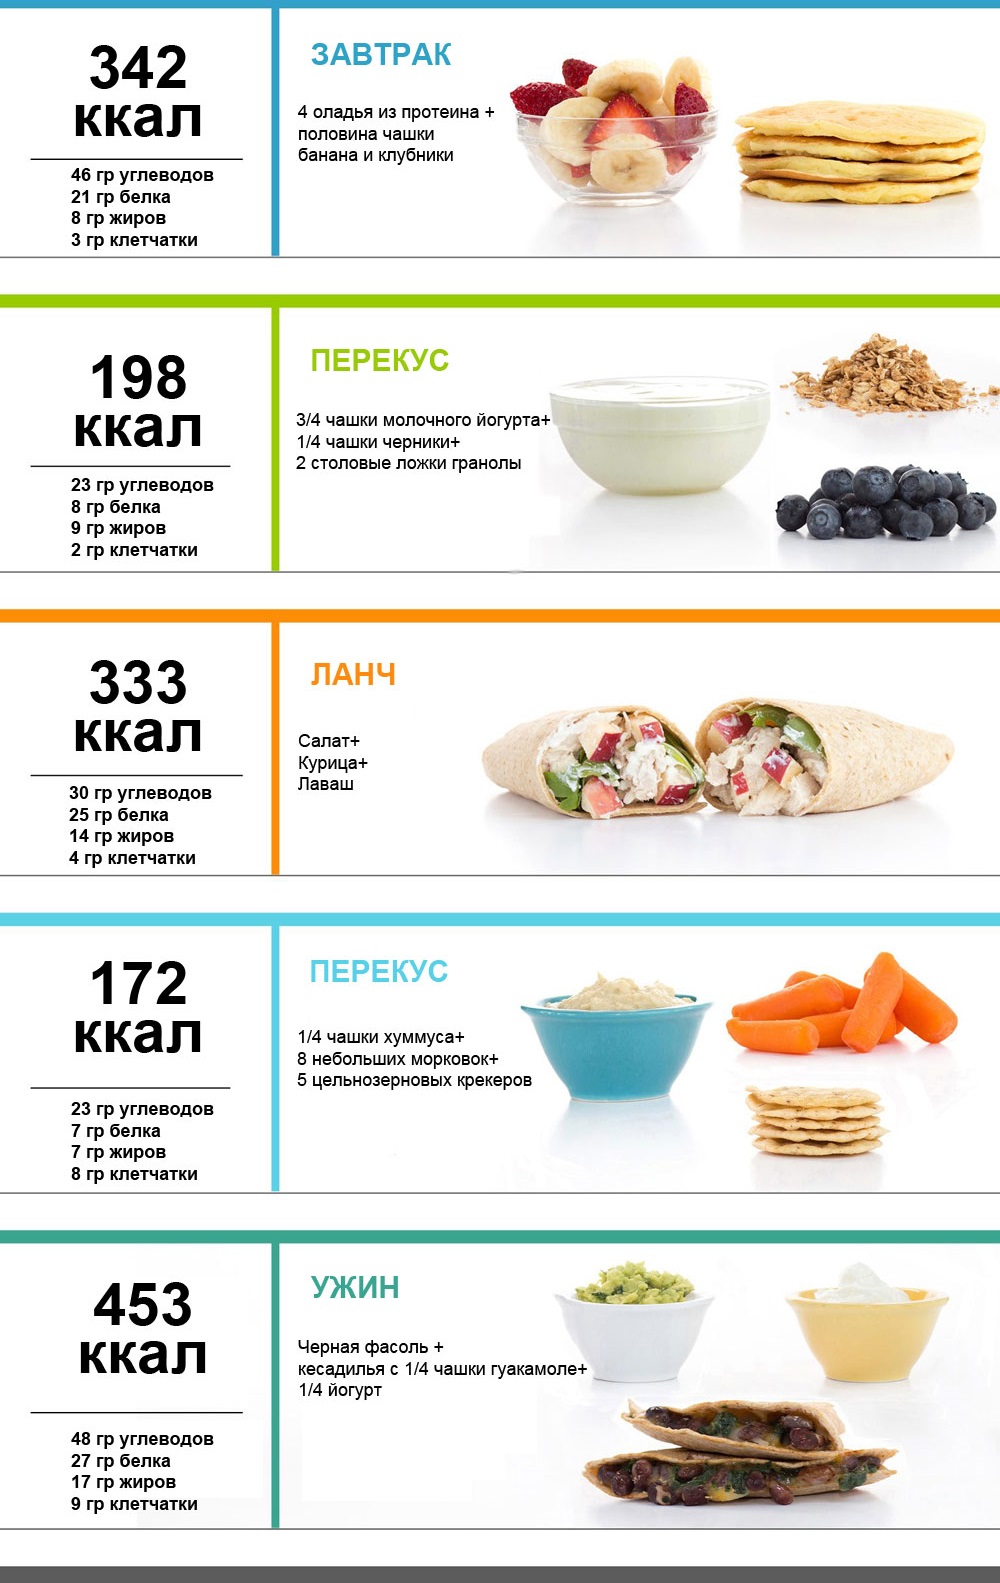 Μενού PP για μια εβδομάδα για απώλεια βάρους. Πίνακας με συνταγές από απλά τρόφιμα, μια διατροφή κατά προσέγγιση 1000, 1200, 1500 θερμίδες την ημέρα